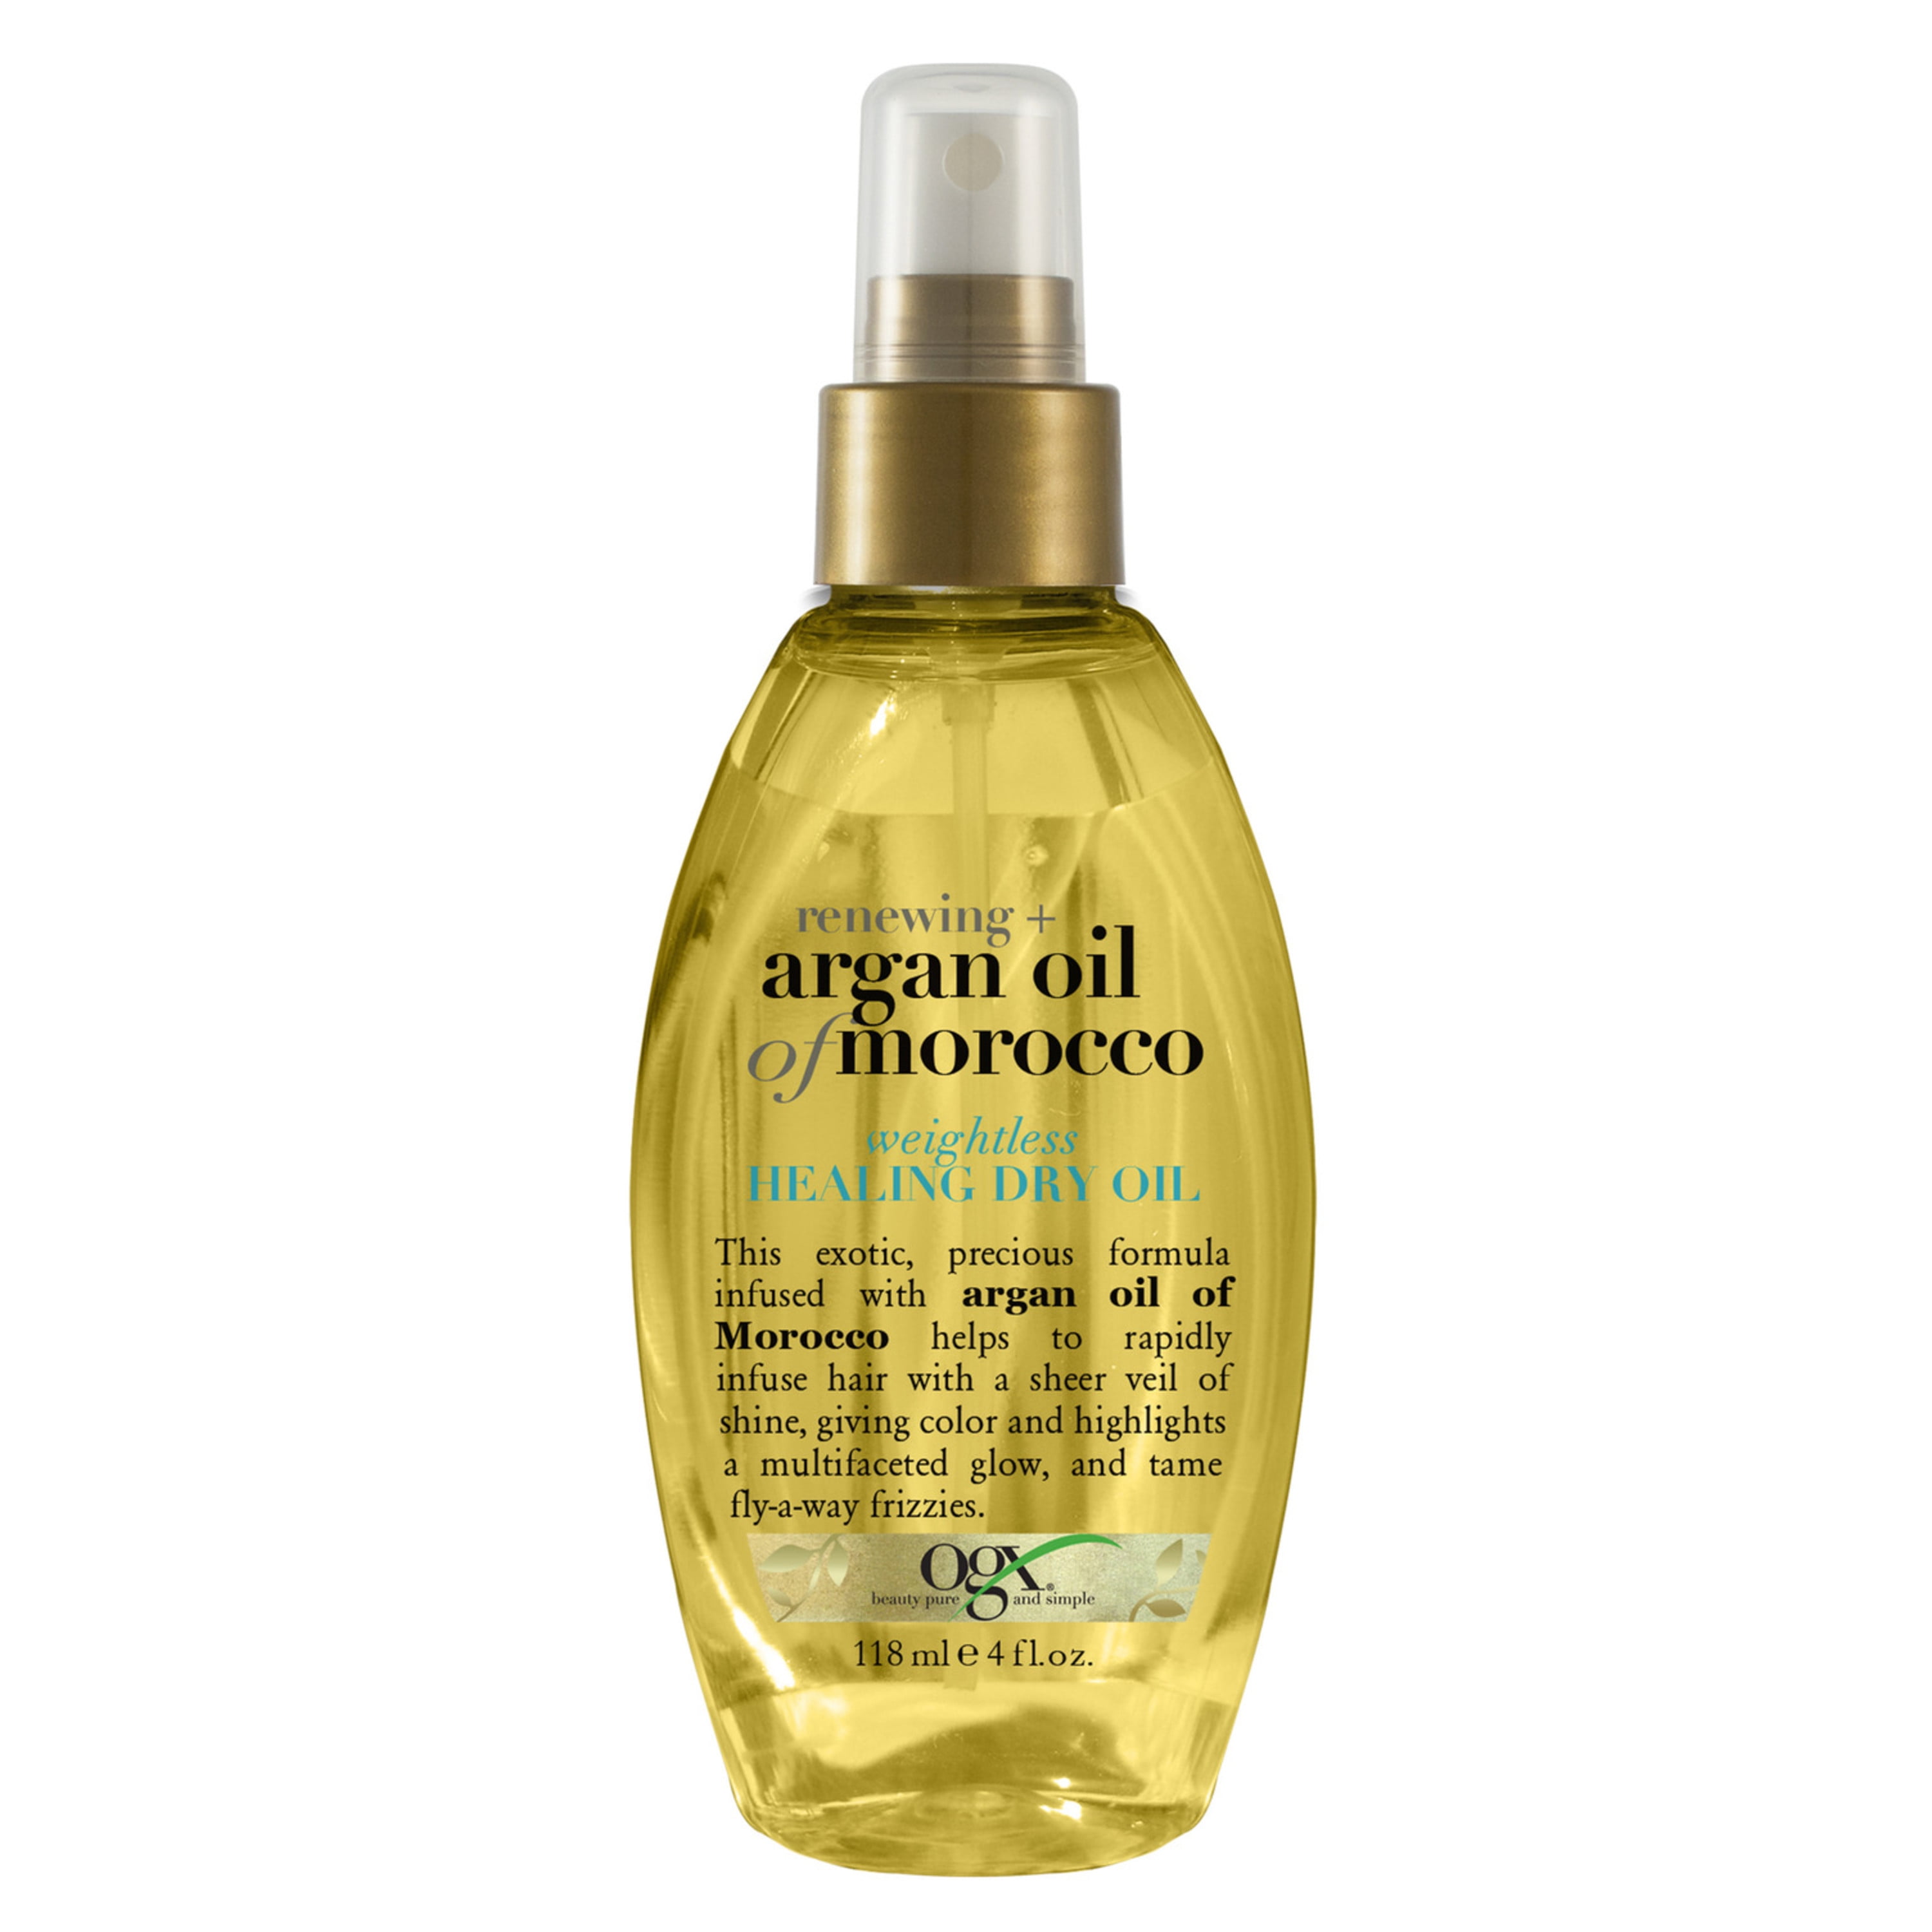 Аргановое масло для волос отзывы. OGX Renewing+ Argan Oil of Morocco Weightless reviving Dry Oil 118ml. OGX масло спрей Марокко для восстановления волос 118 мл. Масло для волос OGX сухое аргановое 118 мл. Keratin Oil OGX масло спрей.